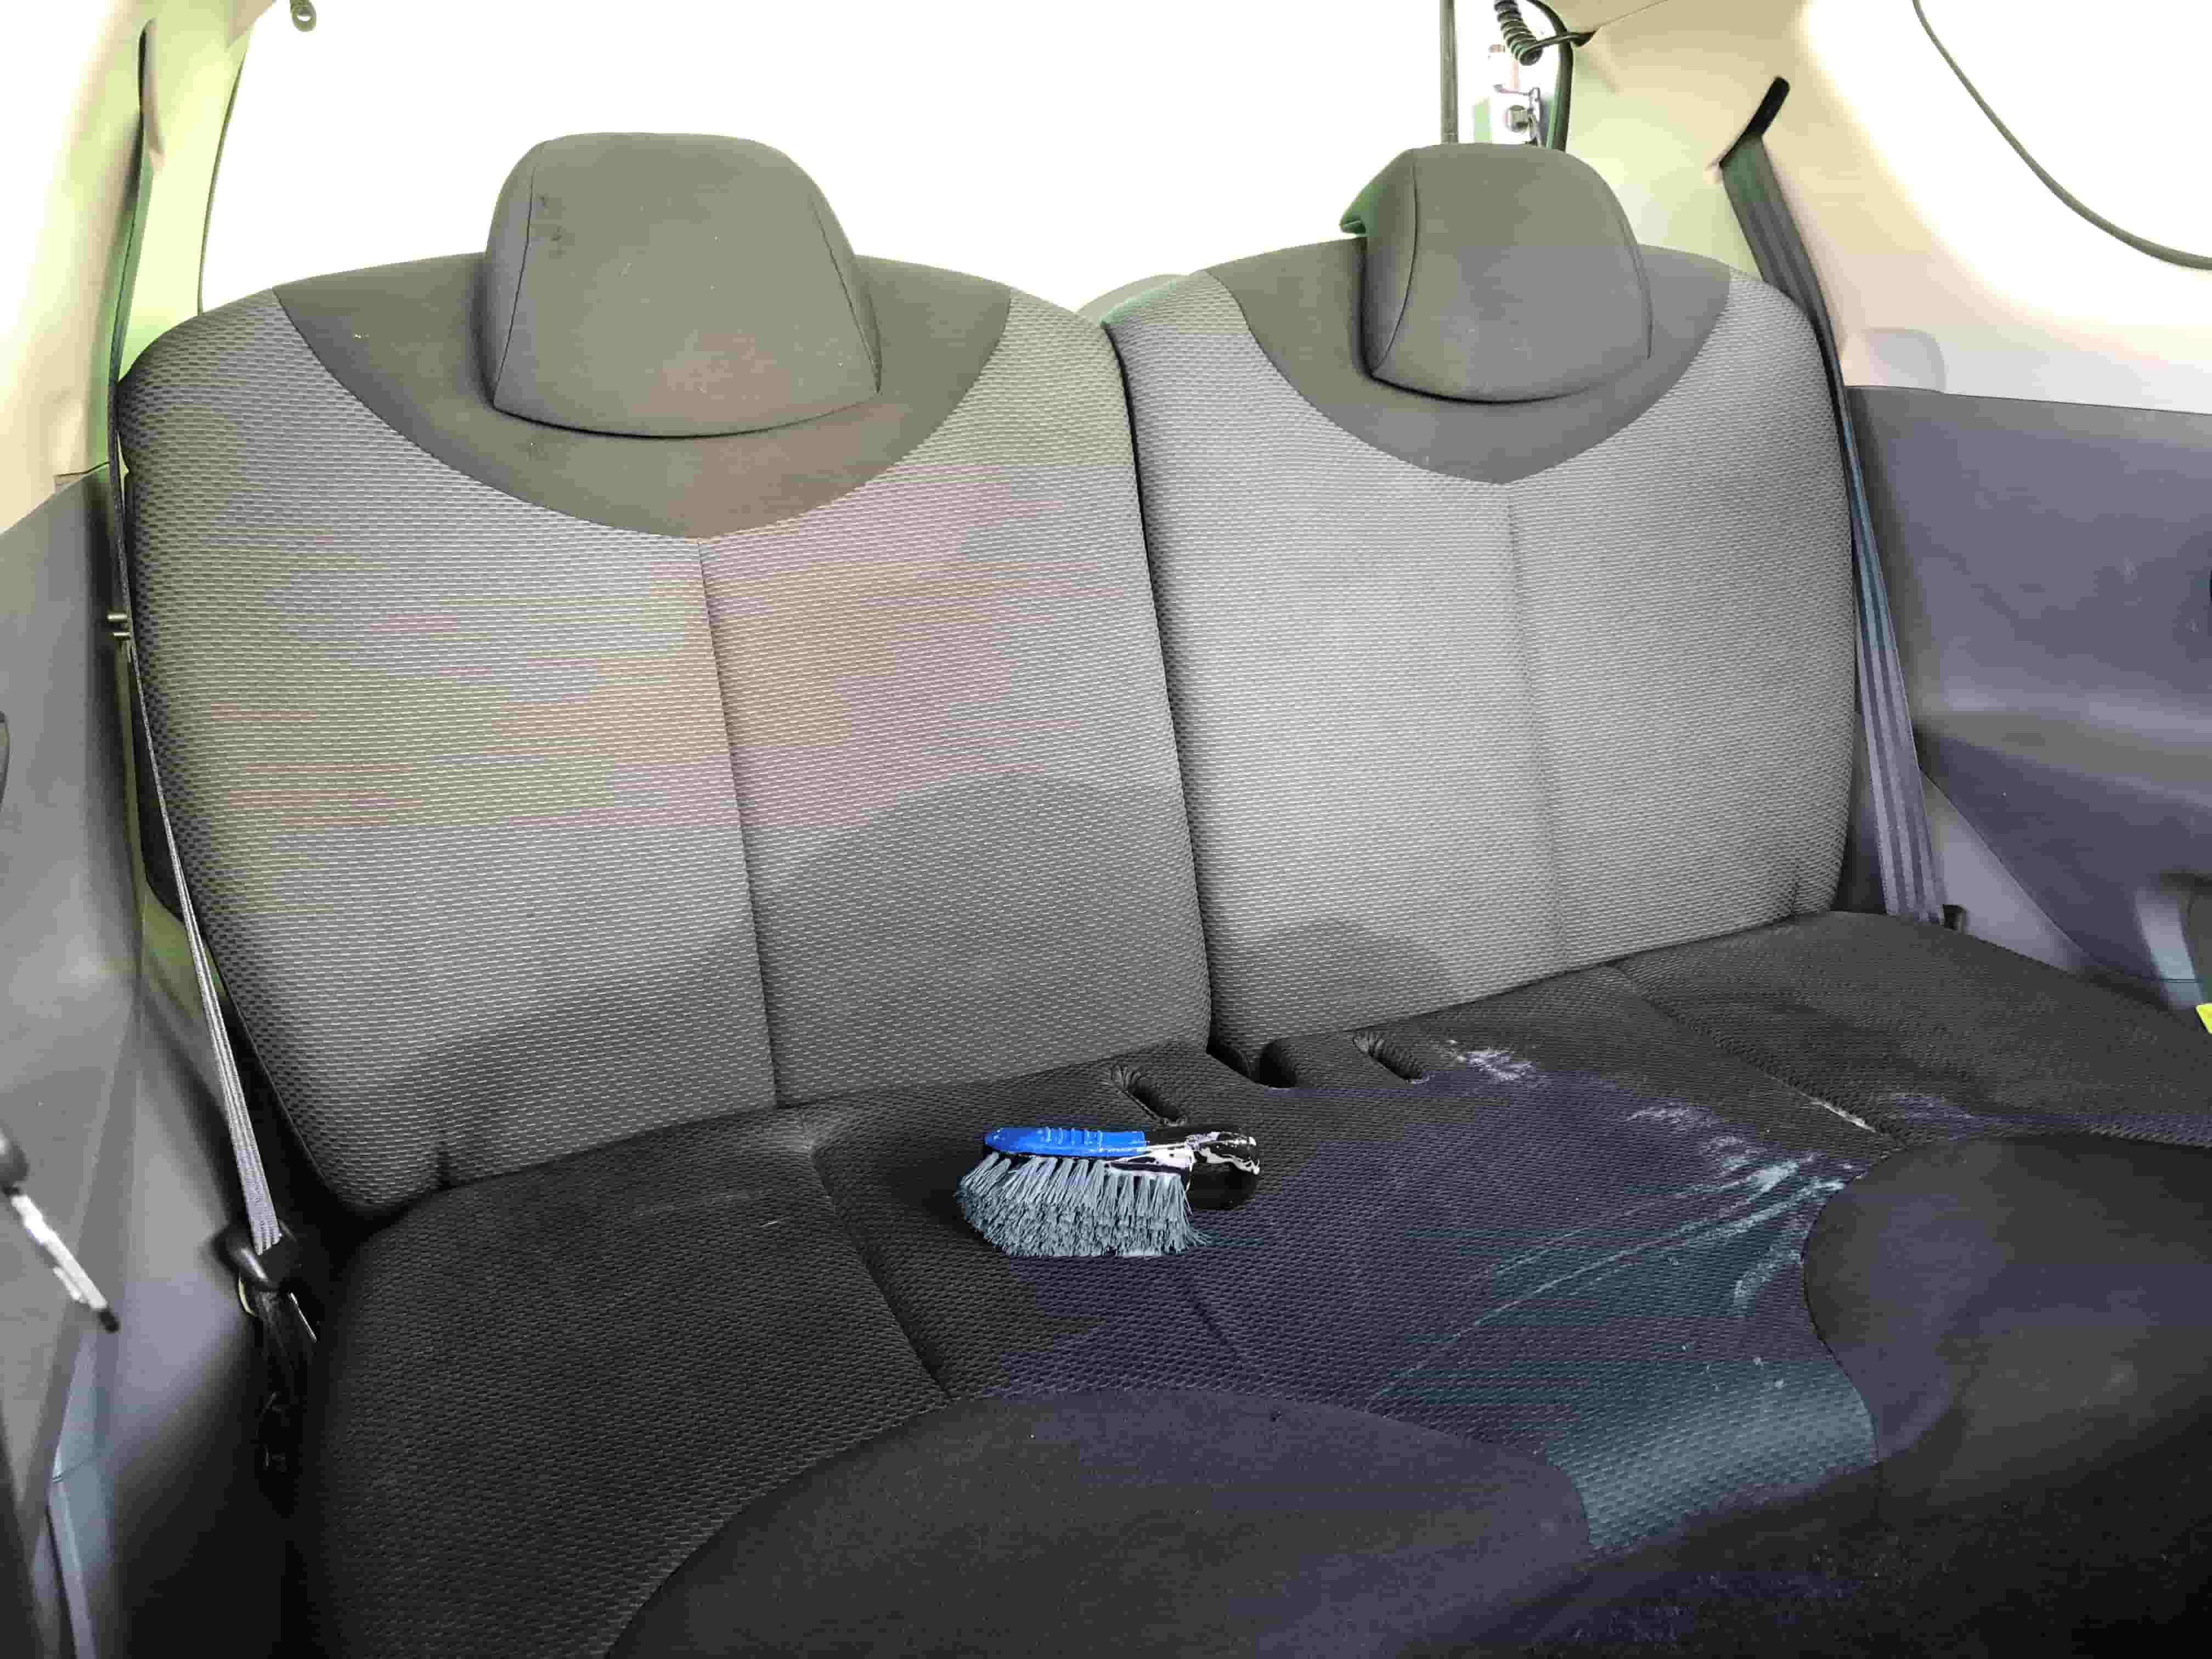 Comment bien nettoyer un siège voiture en tissu ?